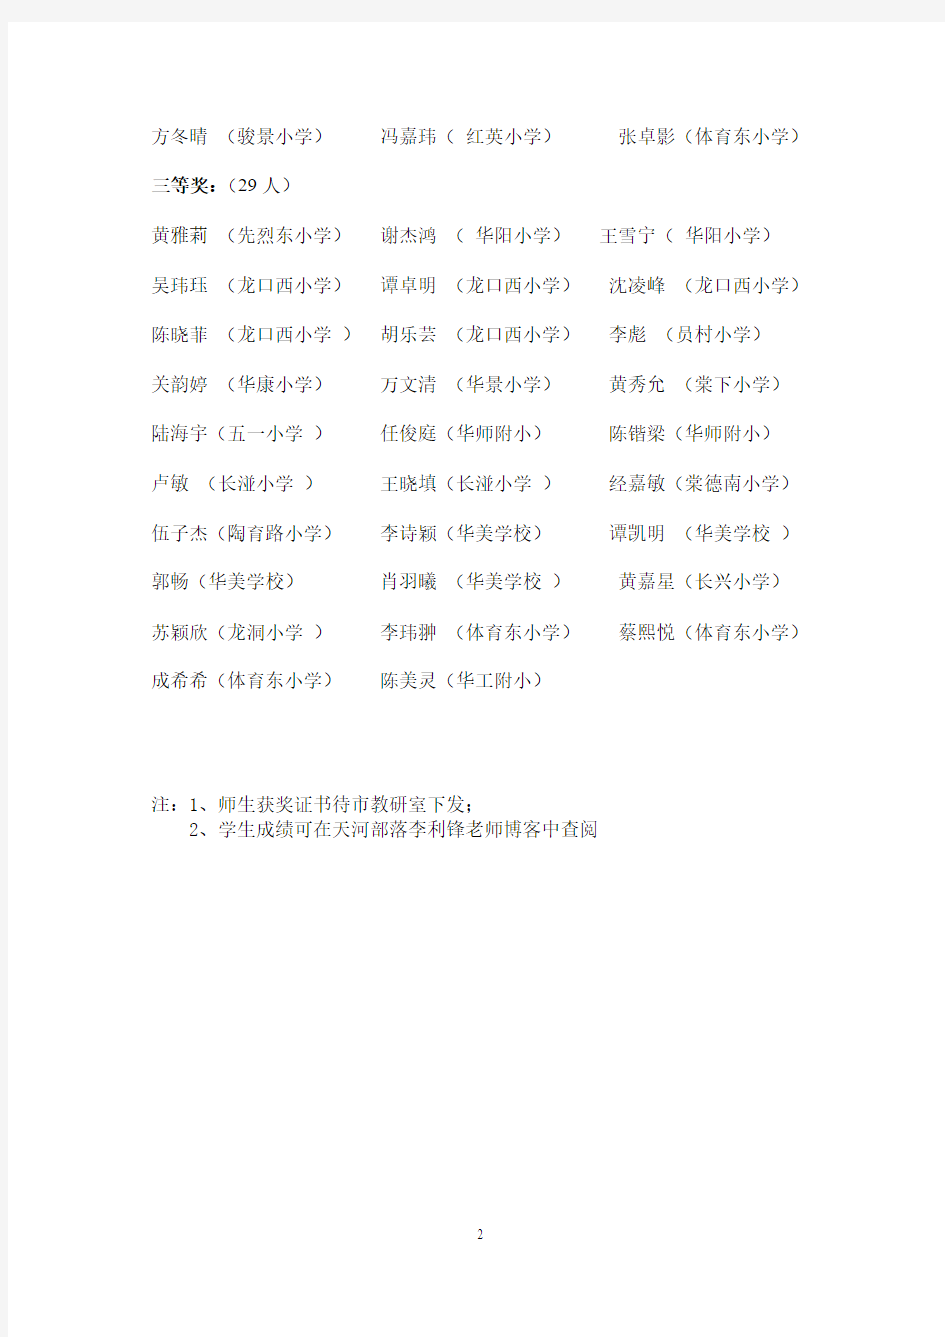 广州市第十六届小学英语竞赛天河区获奖名单